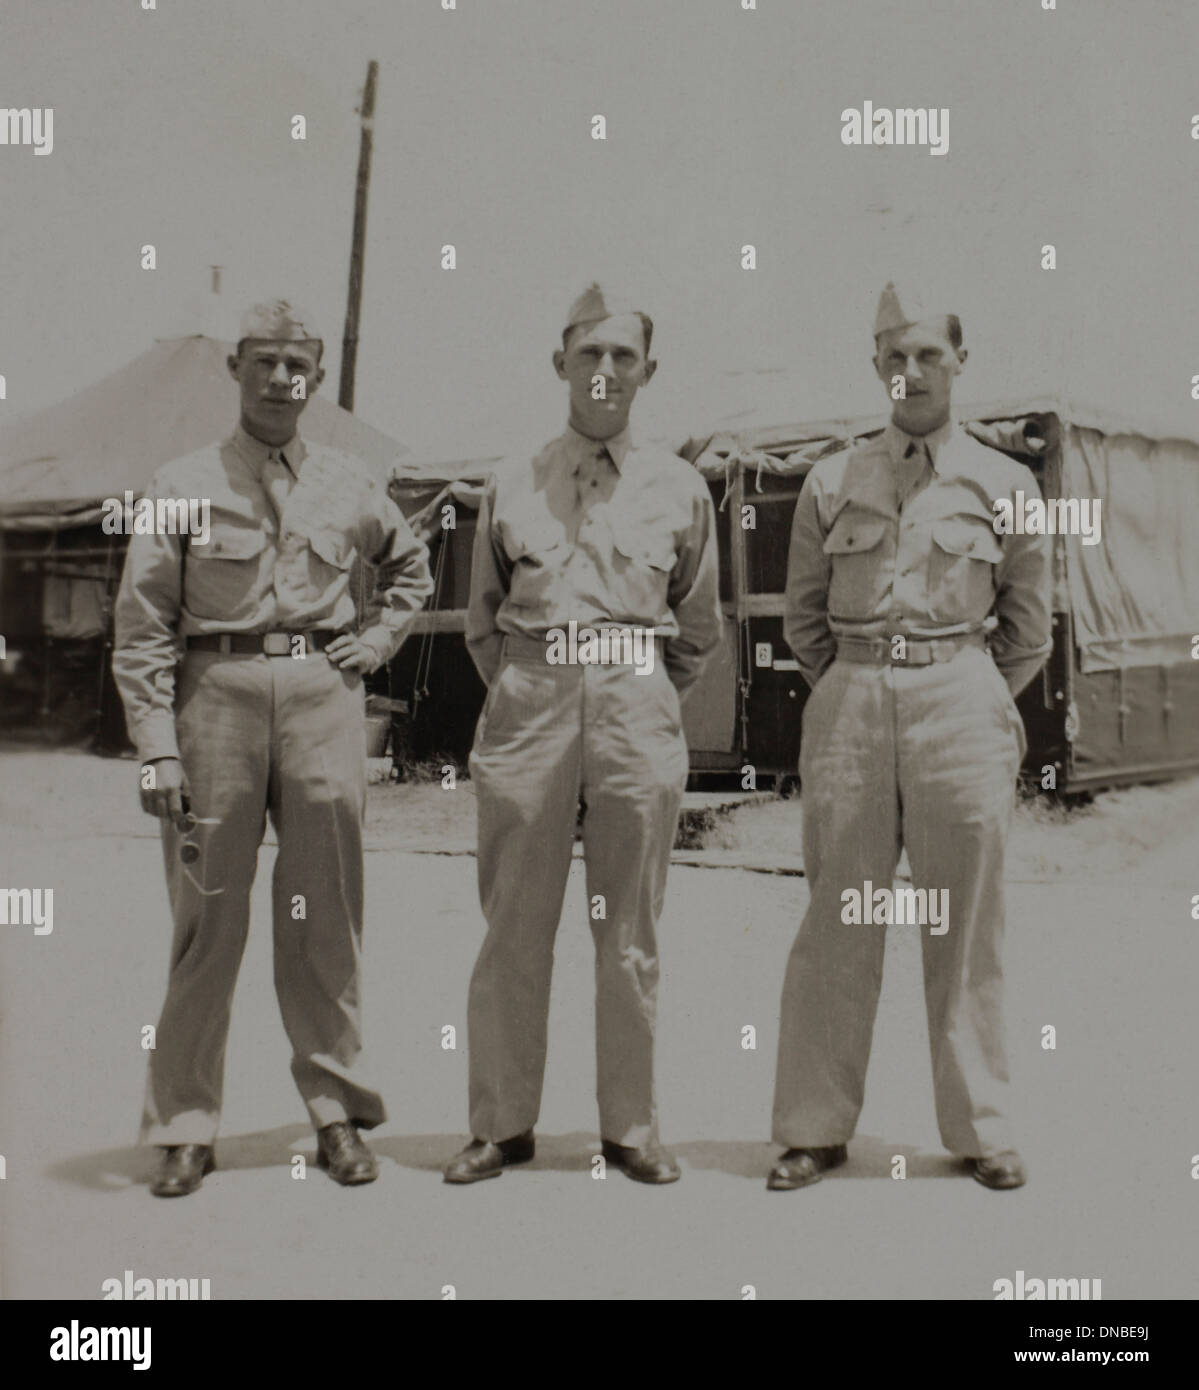 Trois soldats en uniforme, Portrait, WWII, 325e d'infanterie, US Army base militaire , Camp Claiborne, Louisiane, USA, 1942 Banque D'Images